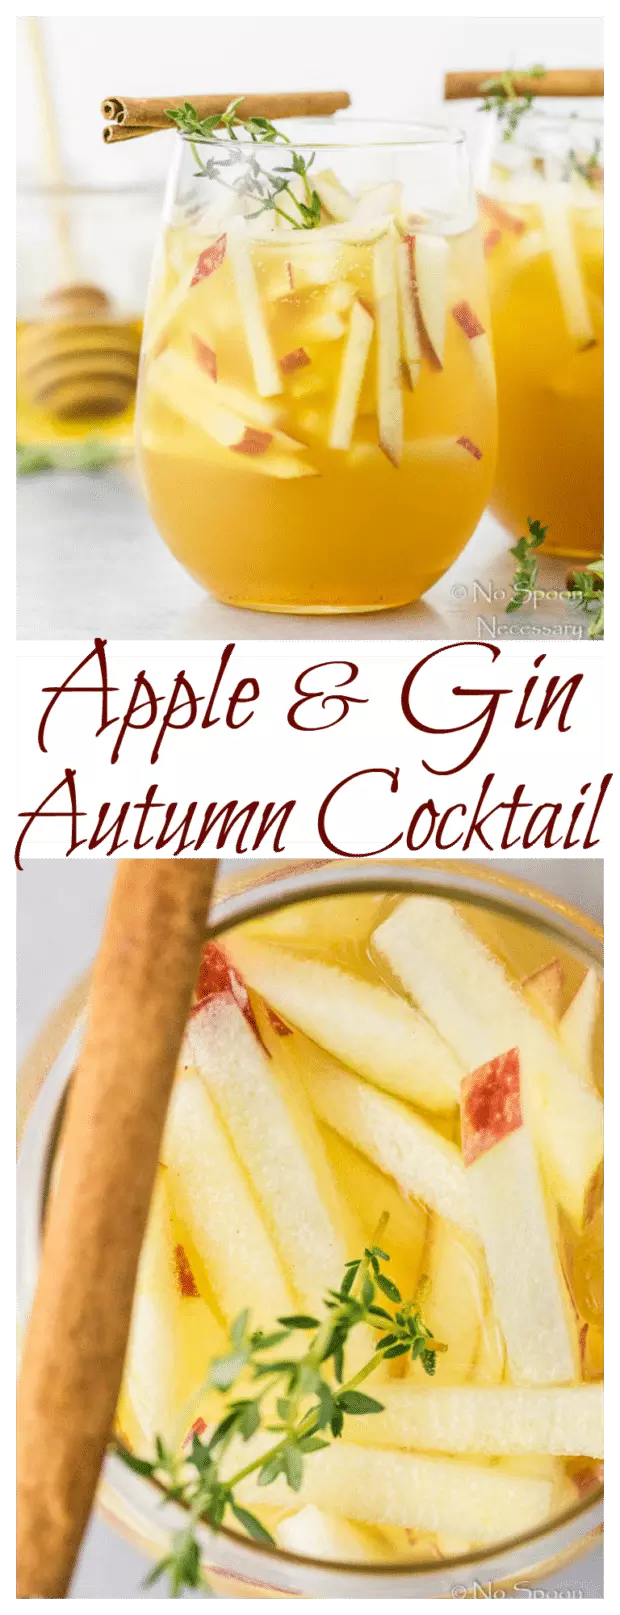 Apple & Gin Autumn Cocktail